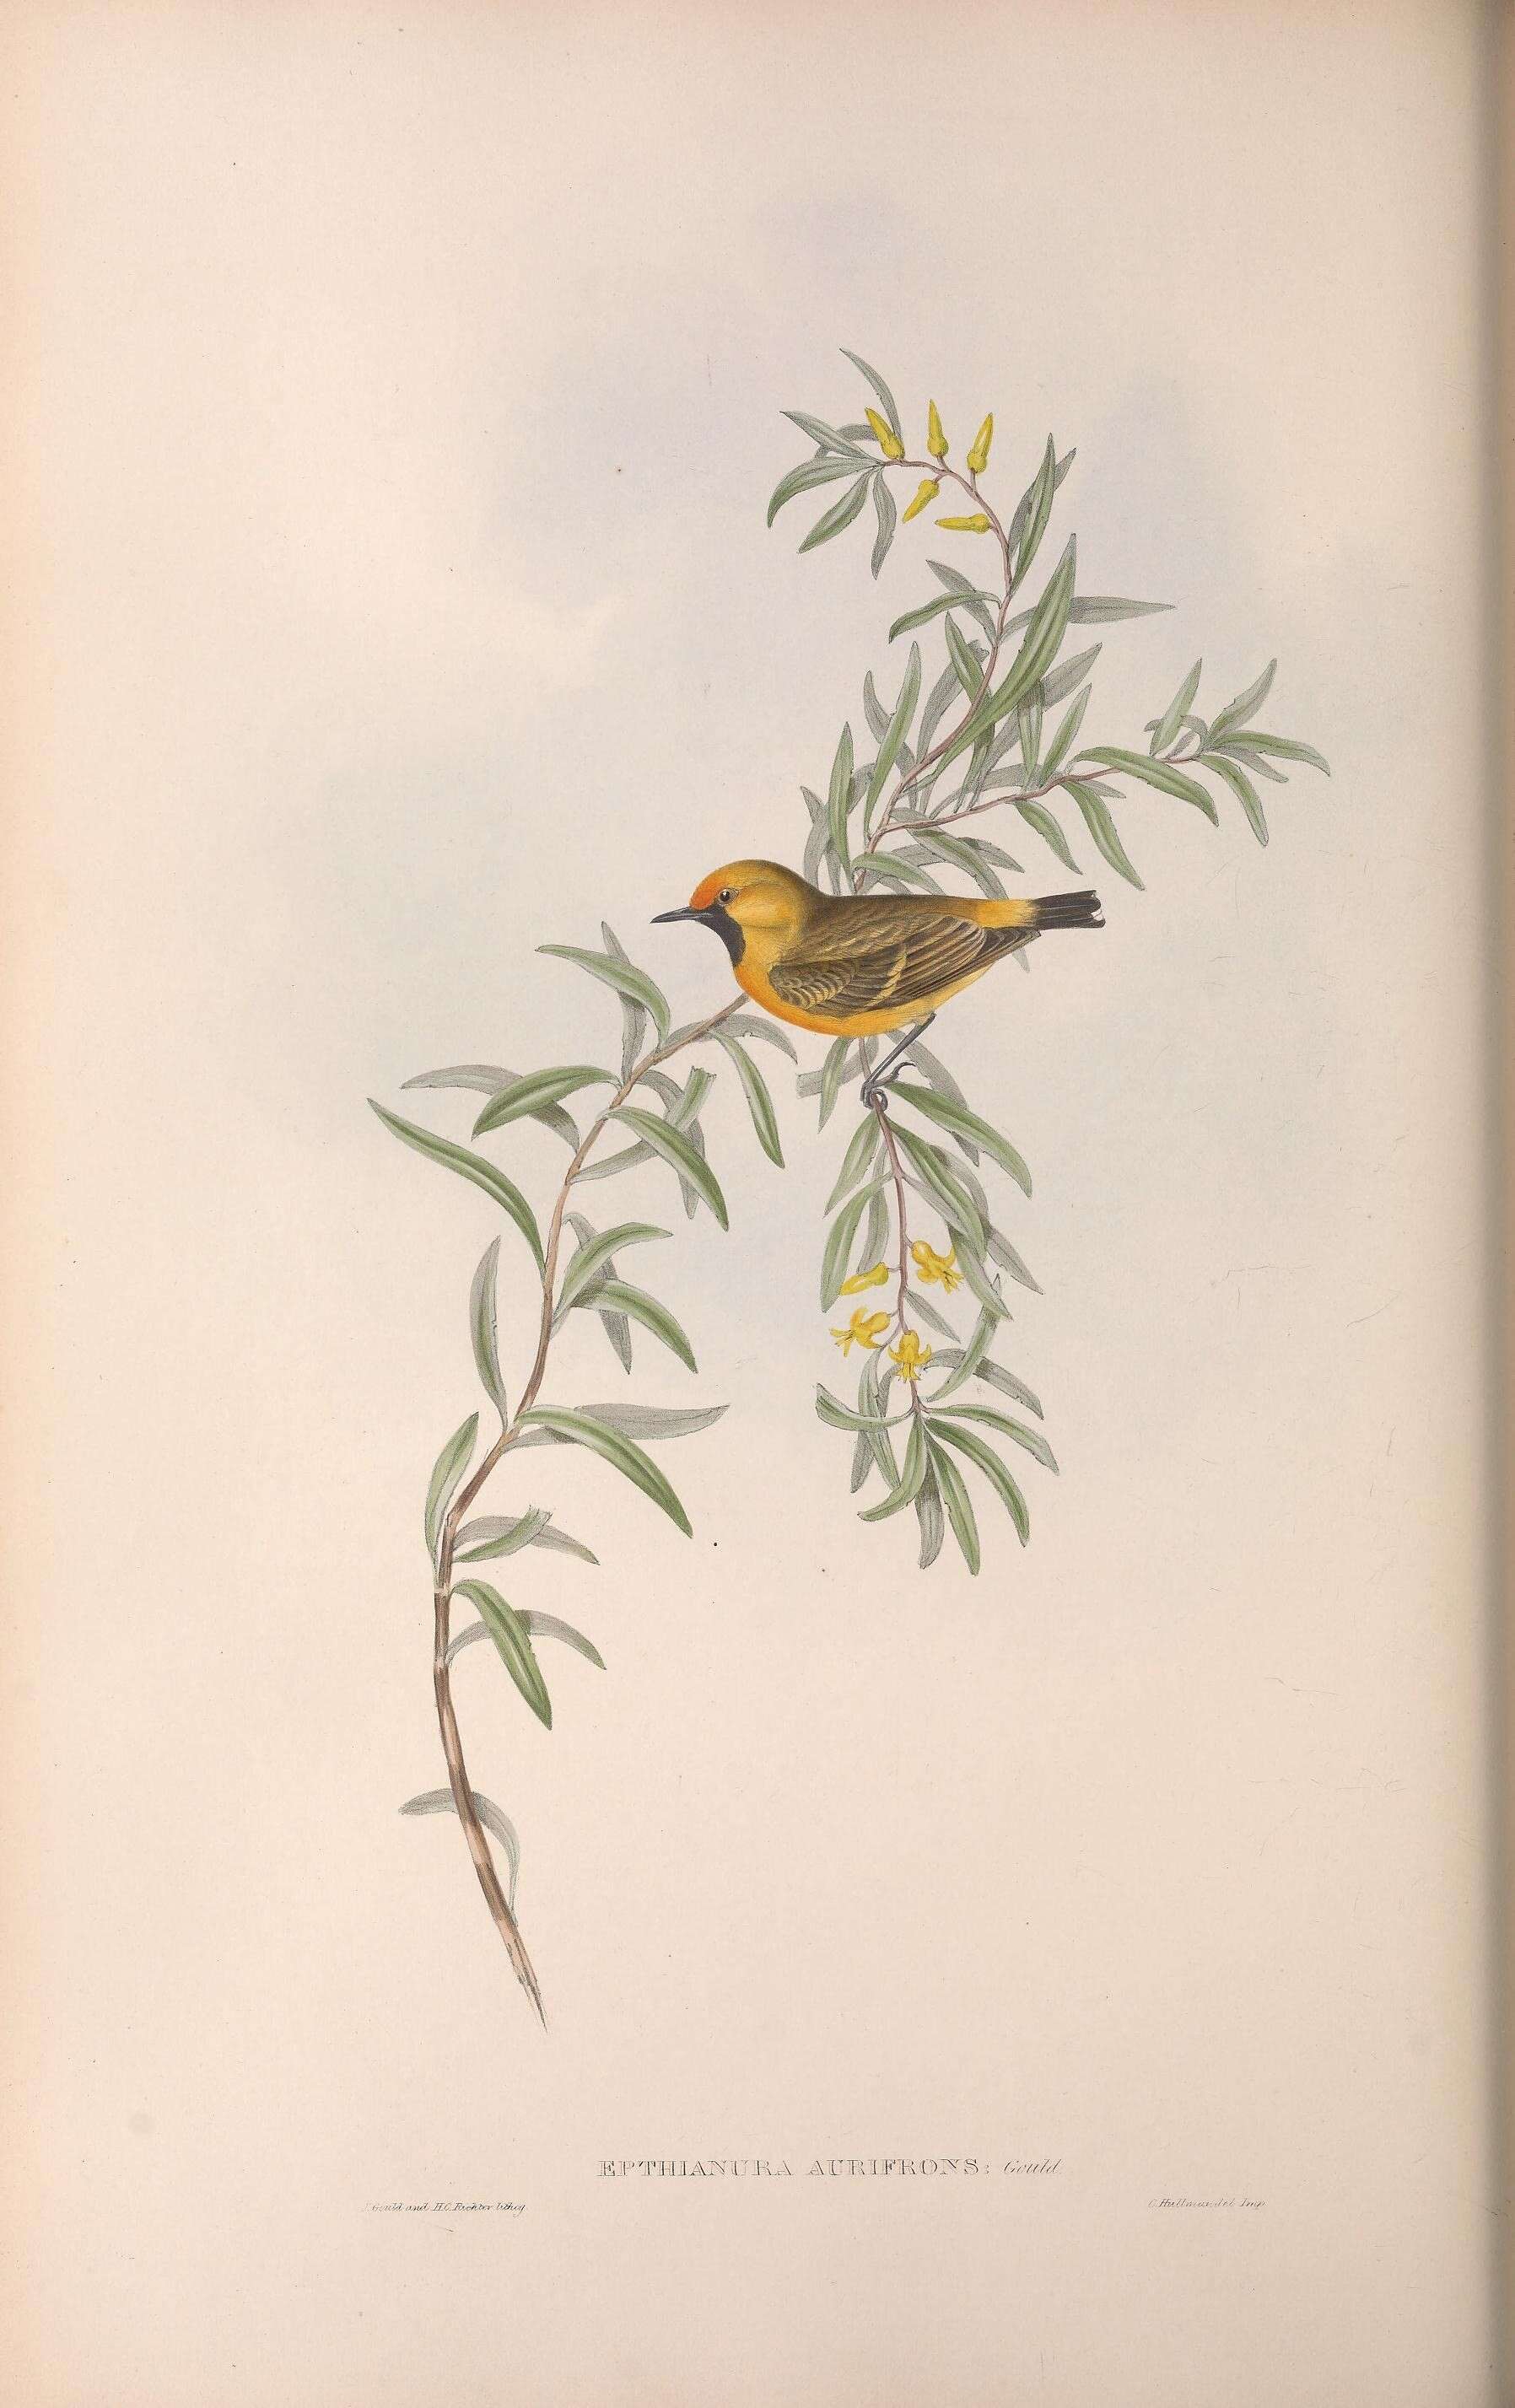 Image of Epthianura Gould 1838